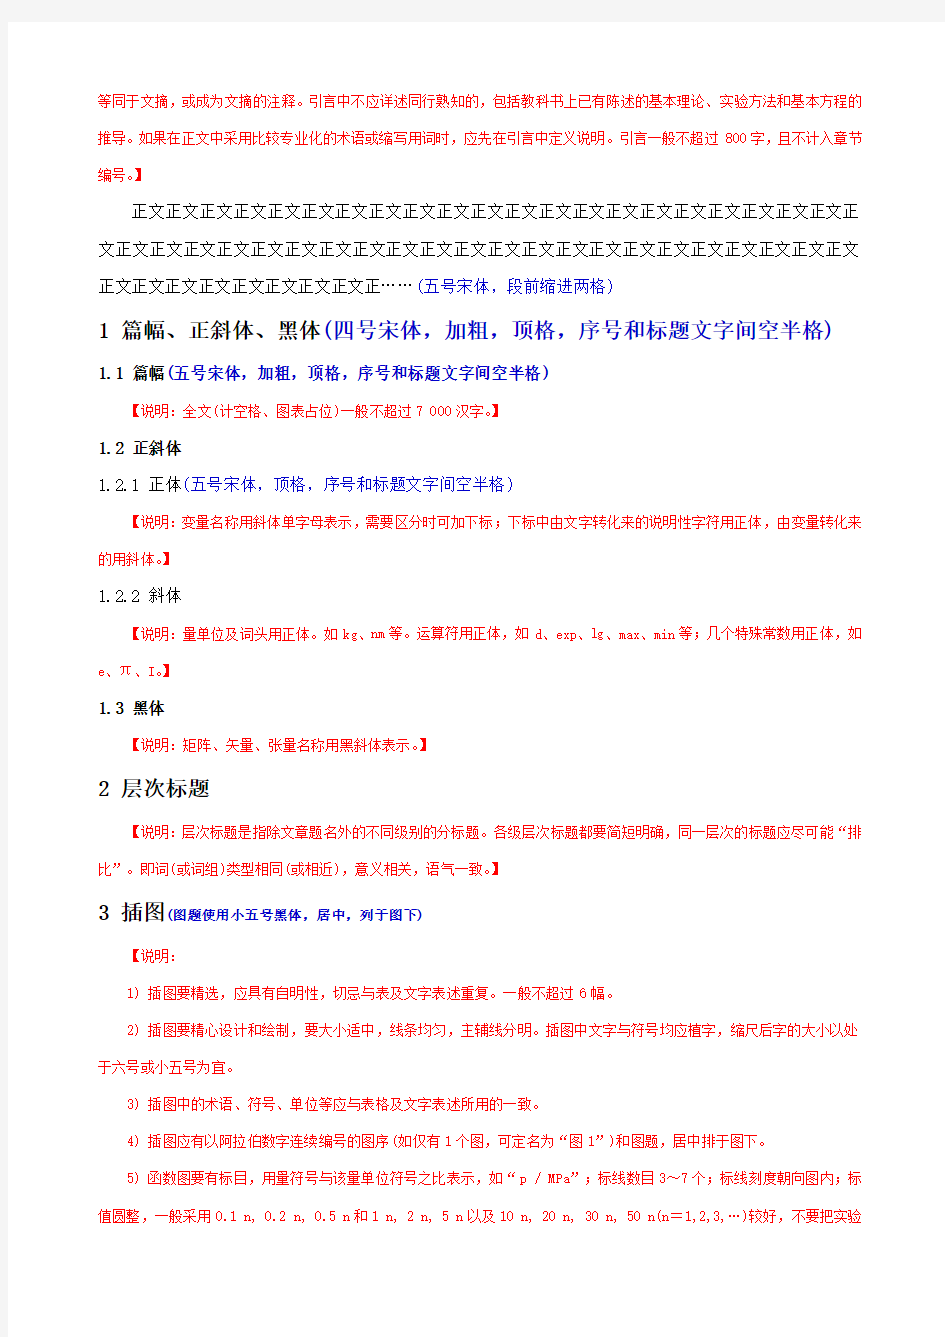 中文核心期刊--论文模板